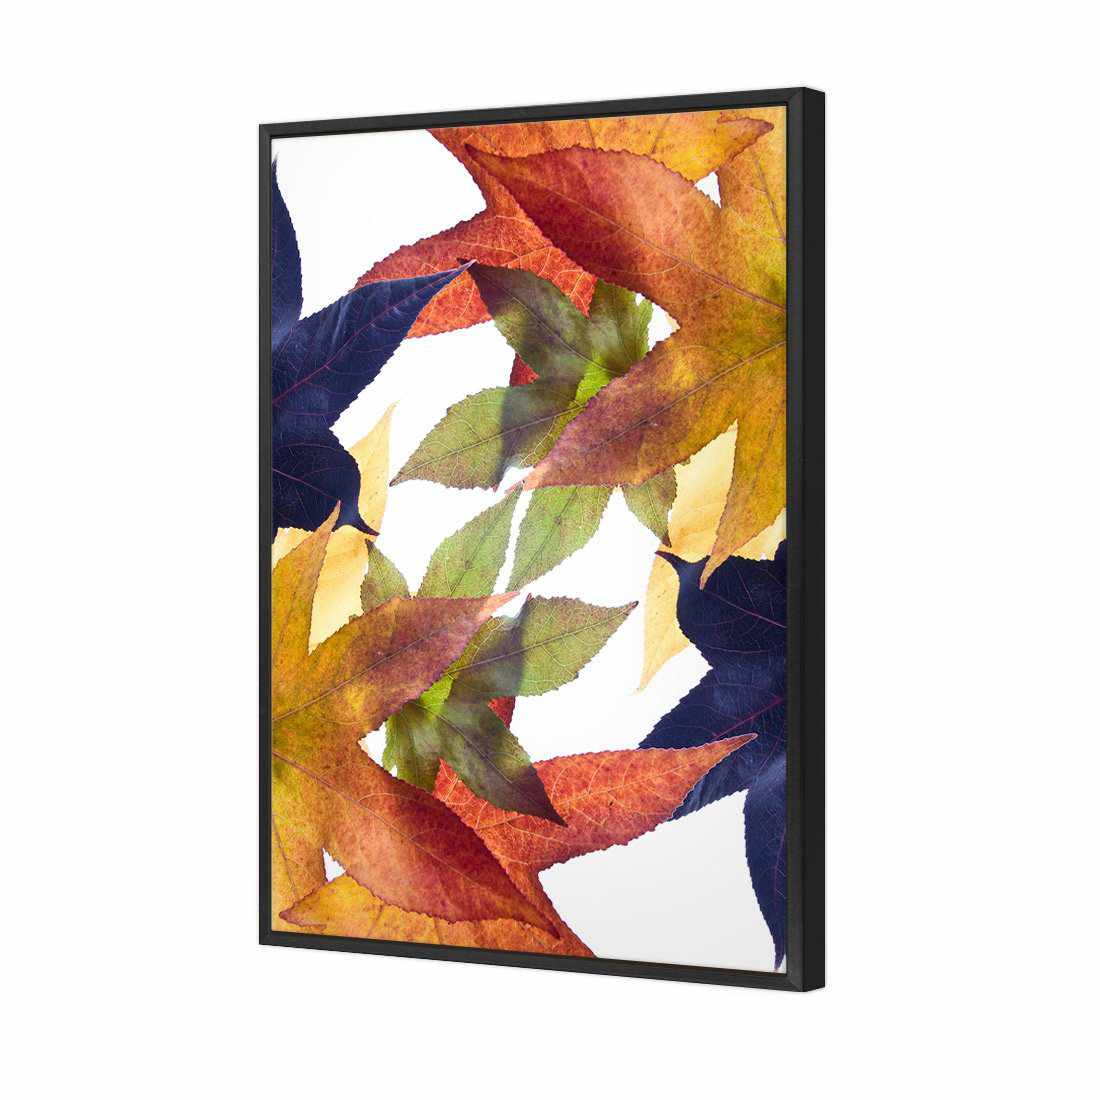 Leaf Kaleidoscope Canvas Art-Canvas-Wall Art Designs-45x30cm-Canvas - Black Frame-Wall Art Designs